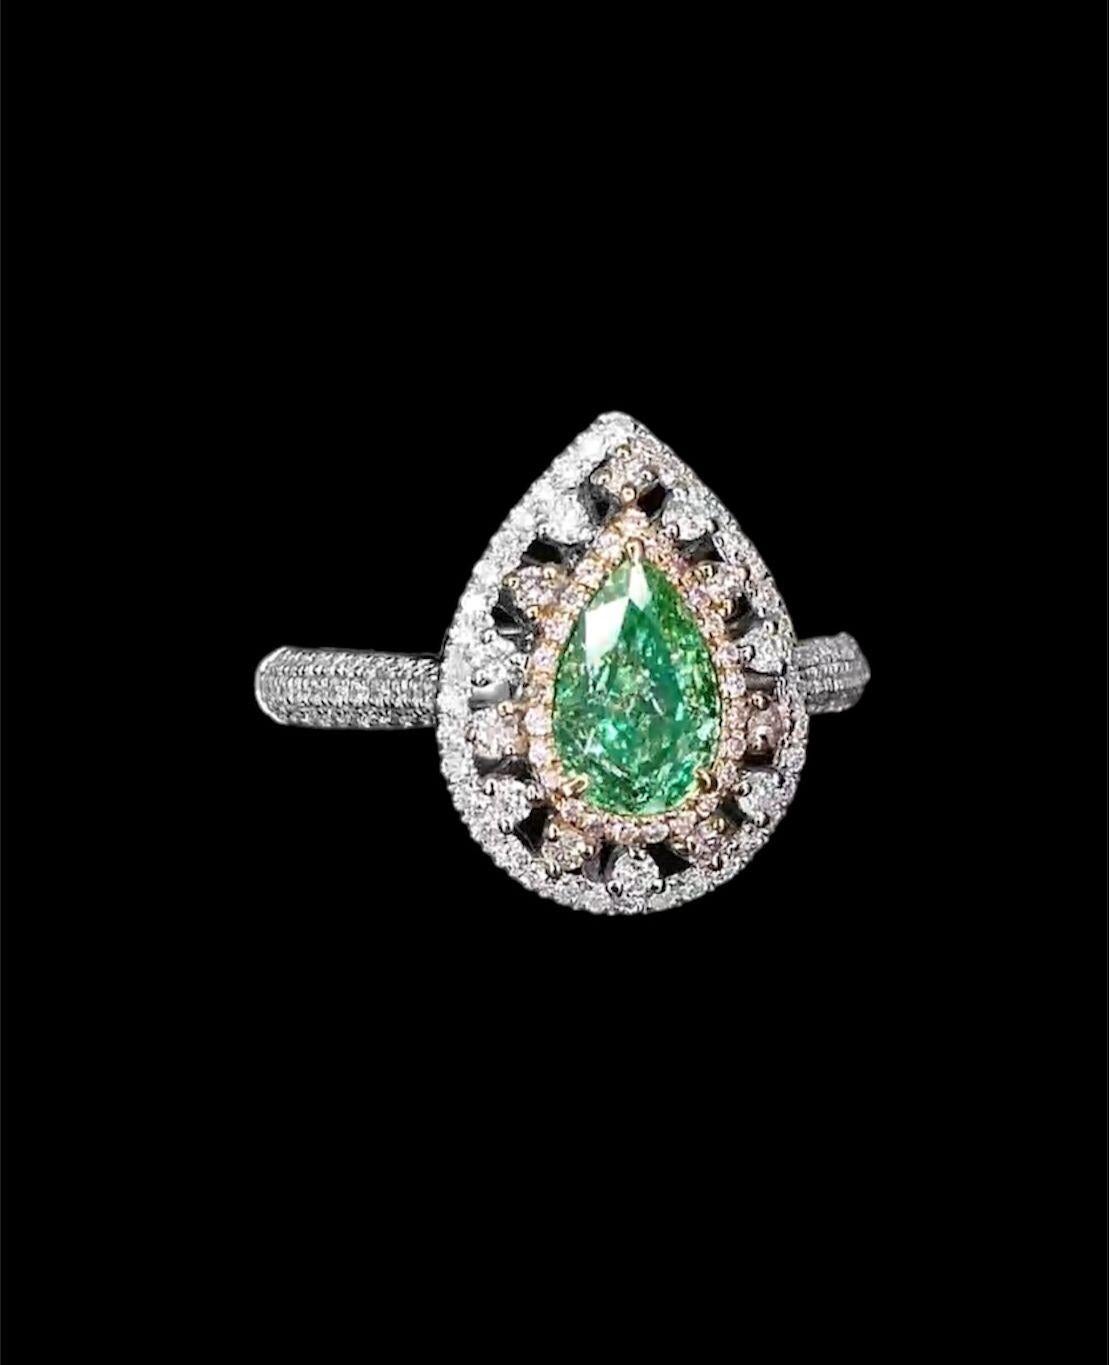 Pear Cut AGL Certified 1.00 Carat Fancy Green Diamond Ring VS Clarity For Sale